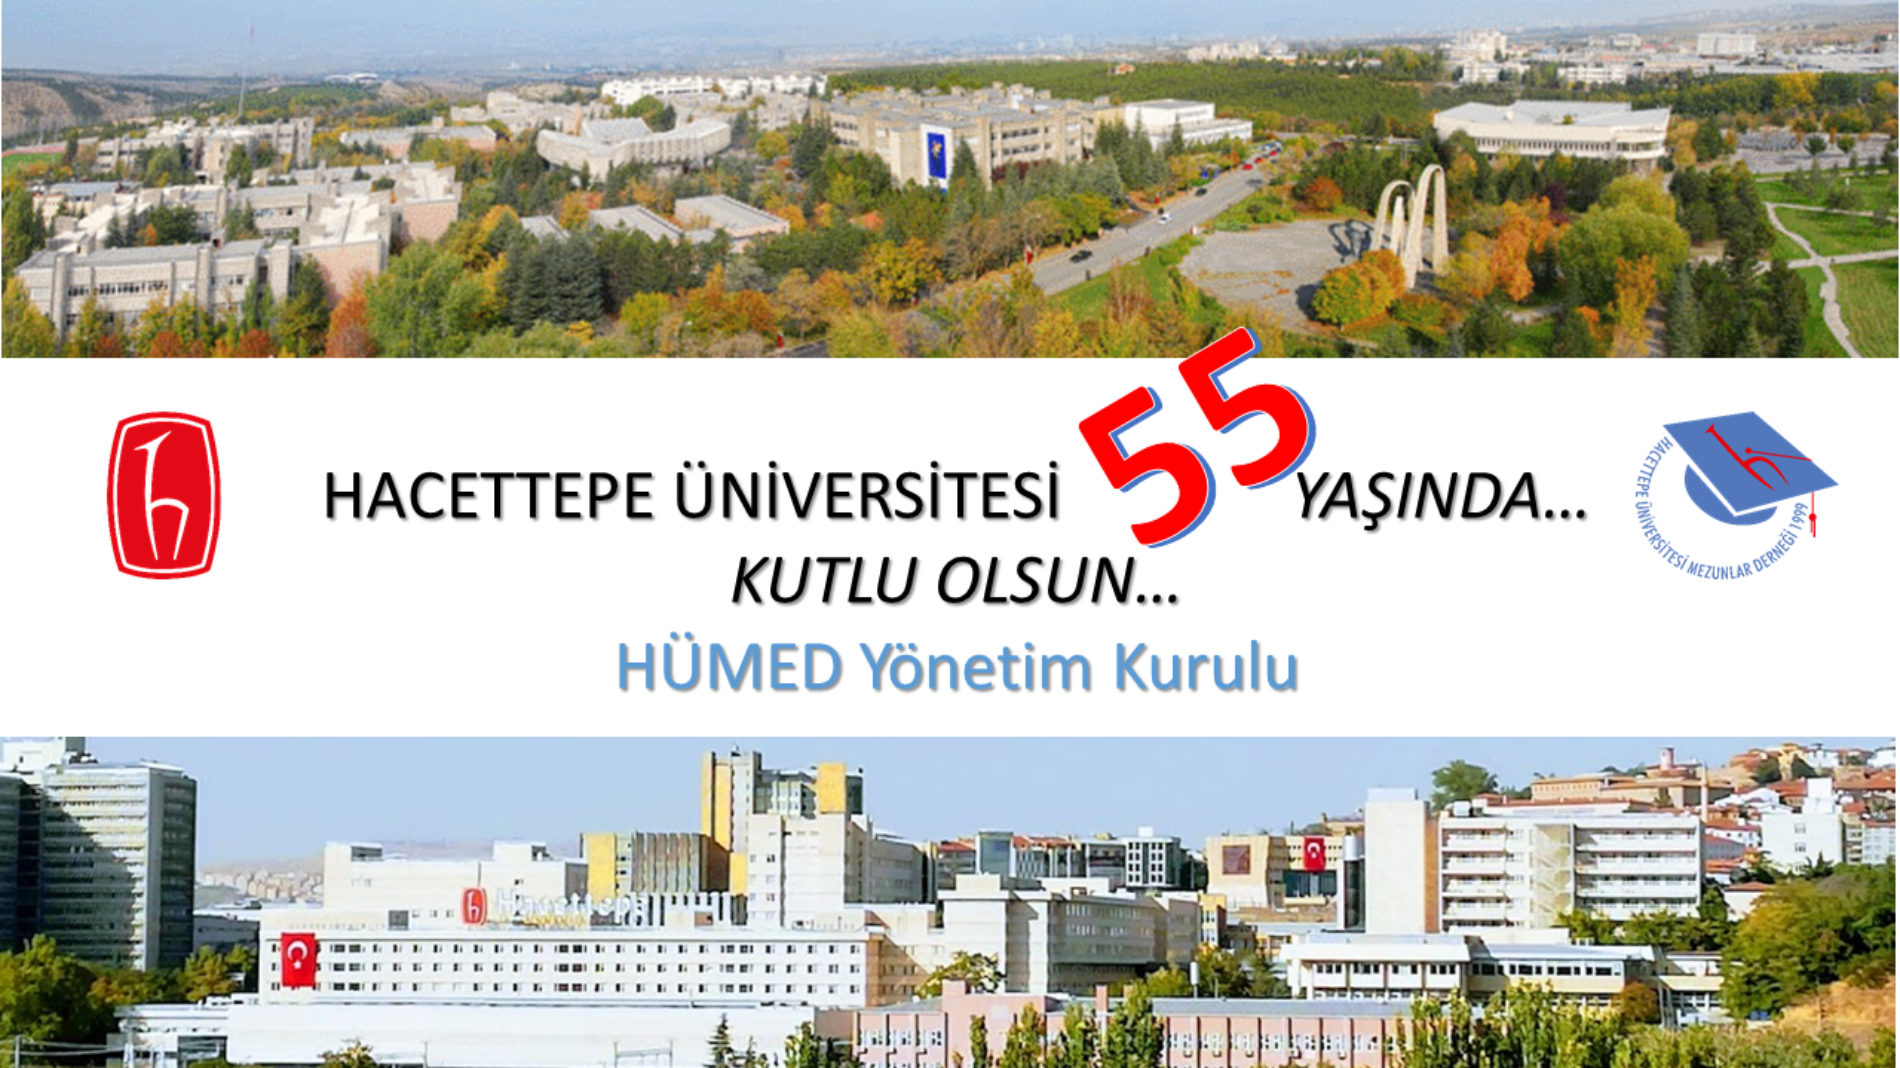 Hacettepe Üniversitesi’nin 55. Yaşı, 8 TEMMUZ DÜNYA HACETTEPELİLER GÜNÜ, Kutlu Olsun